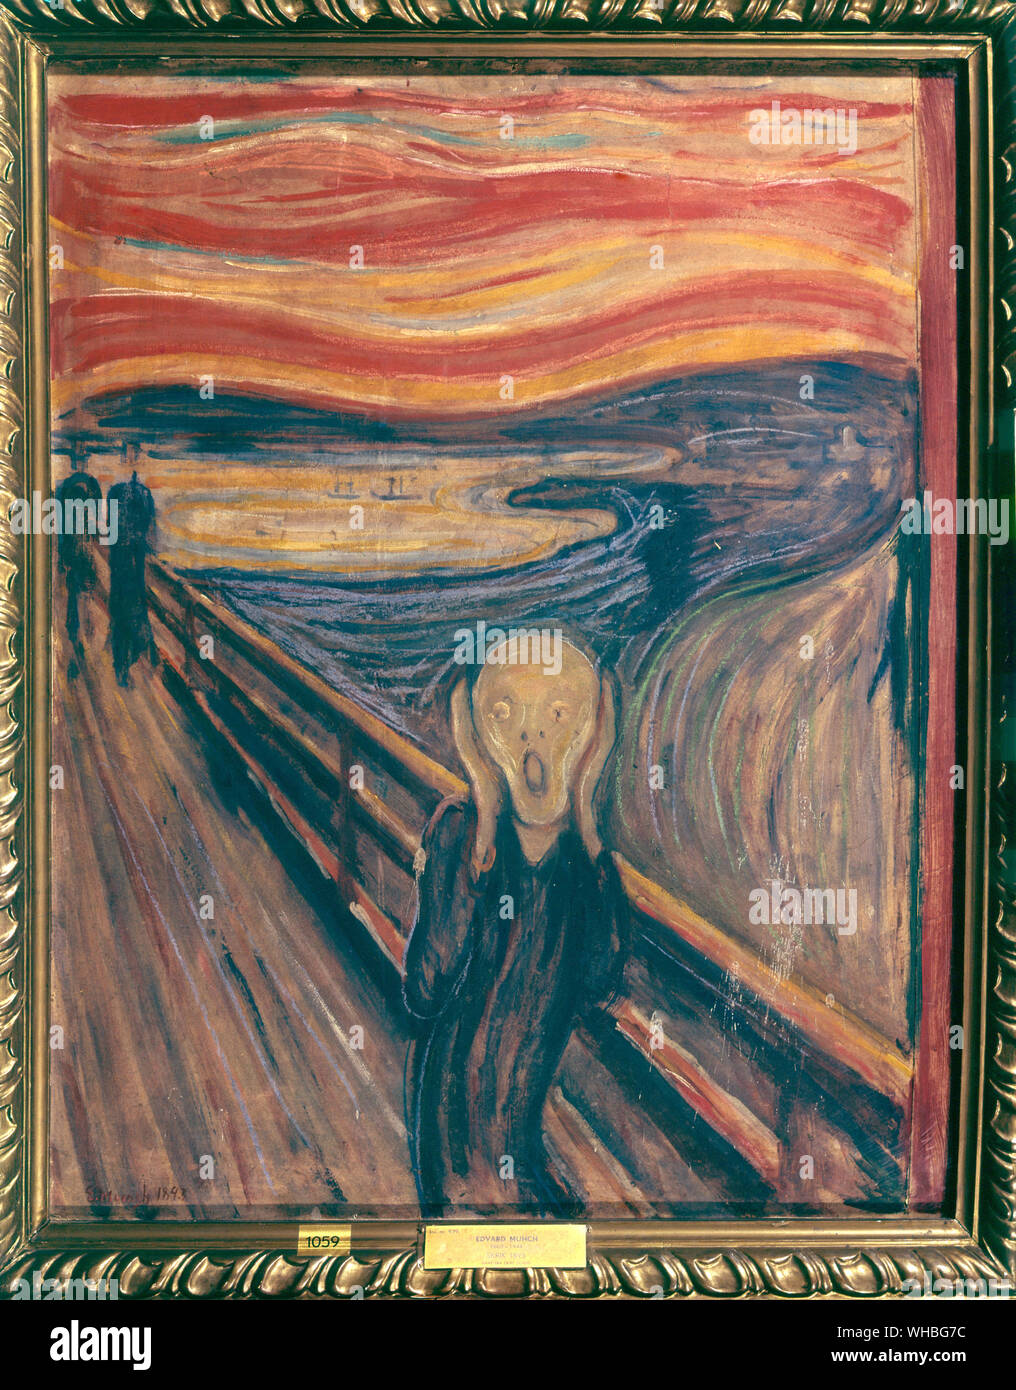 Der Schrei - Edvard Munch-Edvard Munch, 12 Dezember, 1863 - 23. Januar 1944) war ein Norwegischer symbolistische Maler, Grafiker und ein wichtiger Vorläufer der expressionistischen Kunst seiner bekanntesten Gemälde der Schrei (1893), ist eine der Stücke in einer Serie mit dem Titel Der Fries des Lebens, in dem Munch die Themen des Lebens, Liebe, Angst, Tod erforscht, und Melancholie. Wie in vielen seiner Werke, malte er mehrere Versionen davon.. Stockfoto